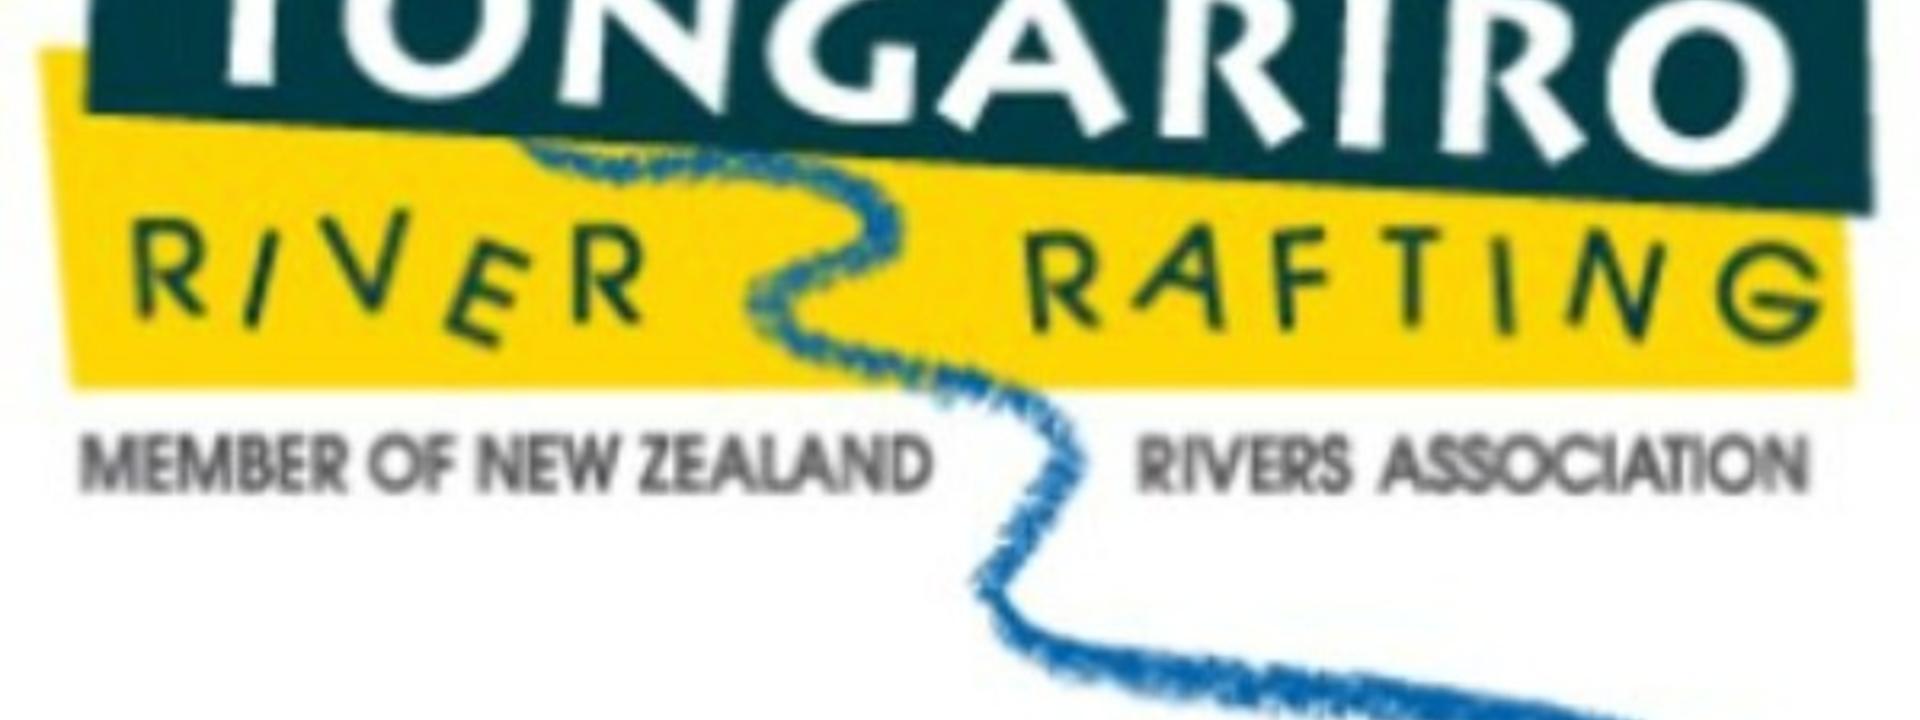 Logo: Tongariro River Rafting